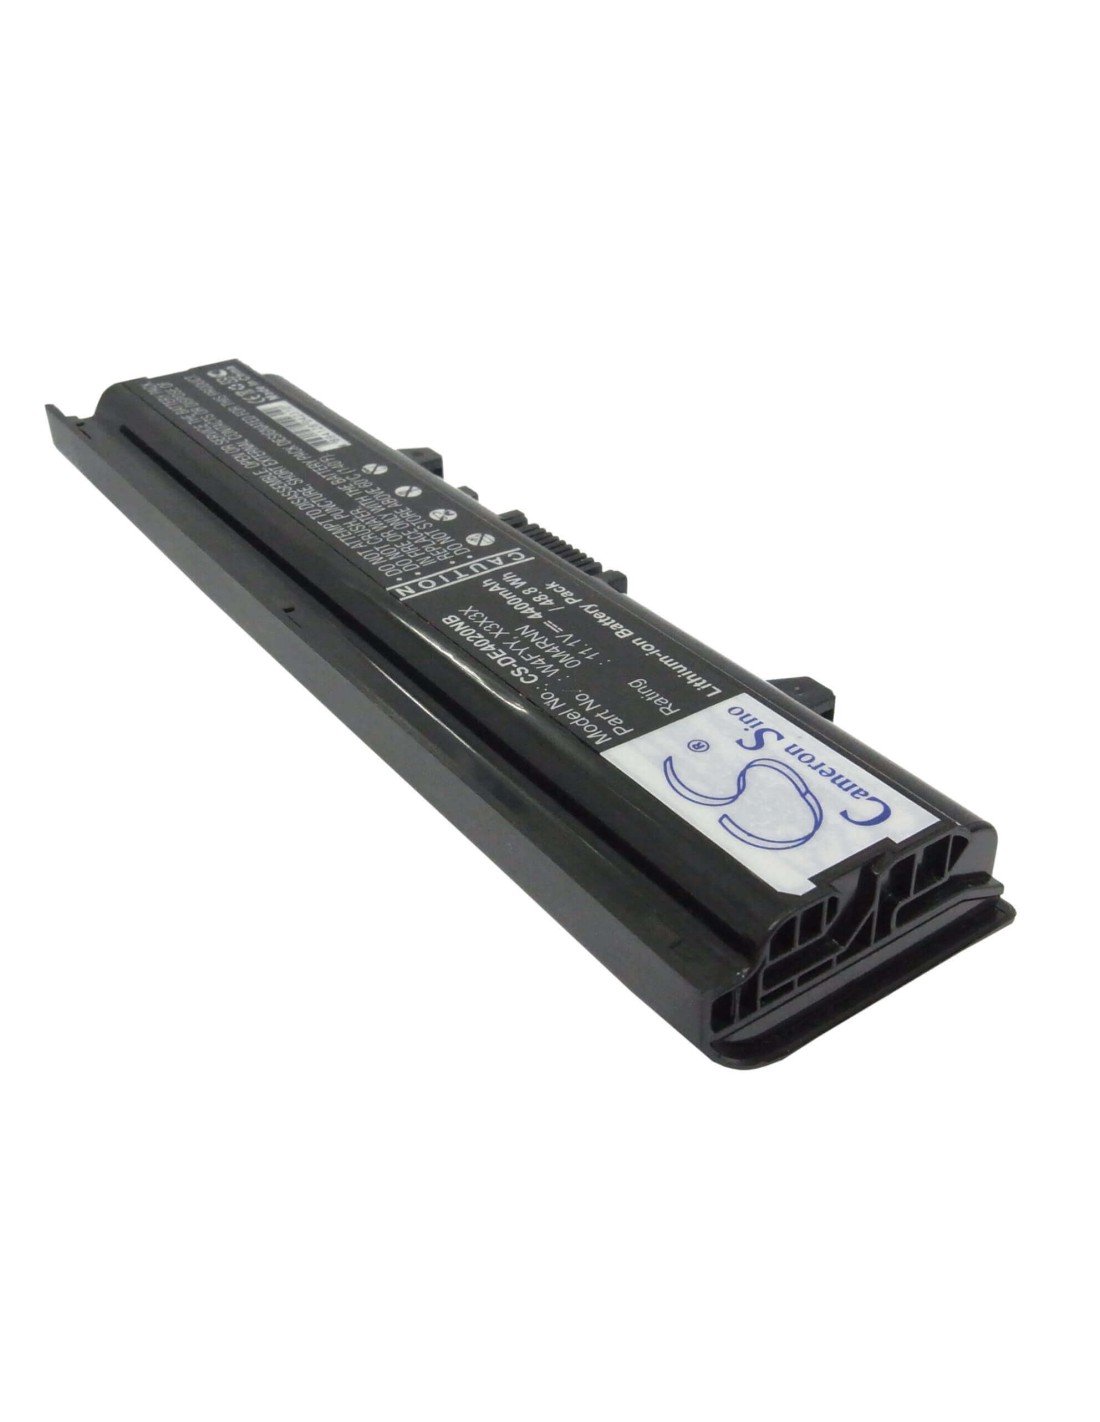 Black Battery for Dell Inspiron 14v, Inspiron 14r-346, Inspiron 14vr 11.1V, 4400mAh - 48.84Wh